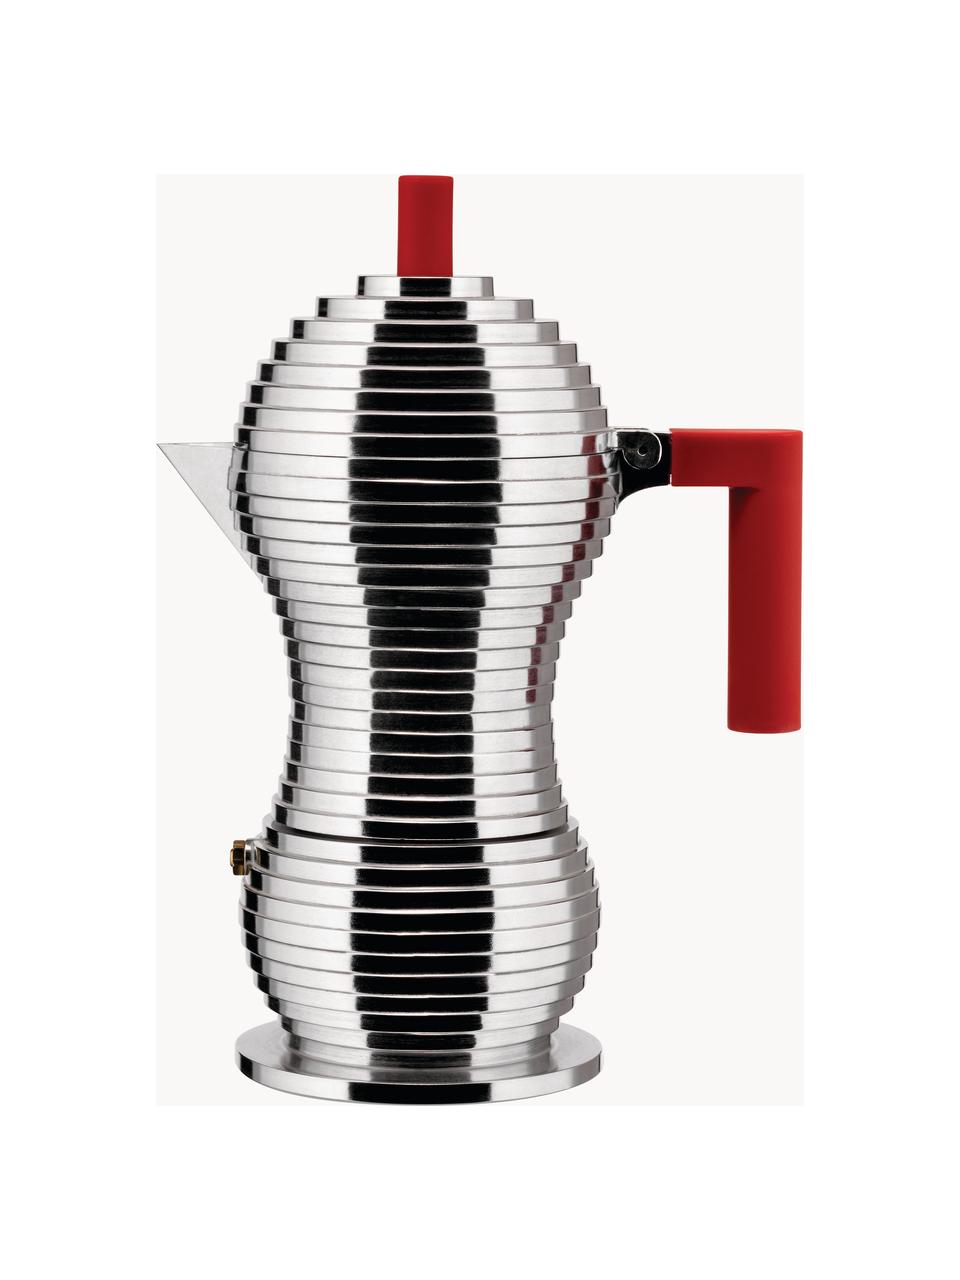 Espressokocher Pulcina, Gehäuse: Aluminiumguss, Griffe: Polyamid, Silberfarben, Rot, B 20 x H 26 cm, für sechs Tassen